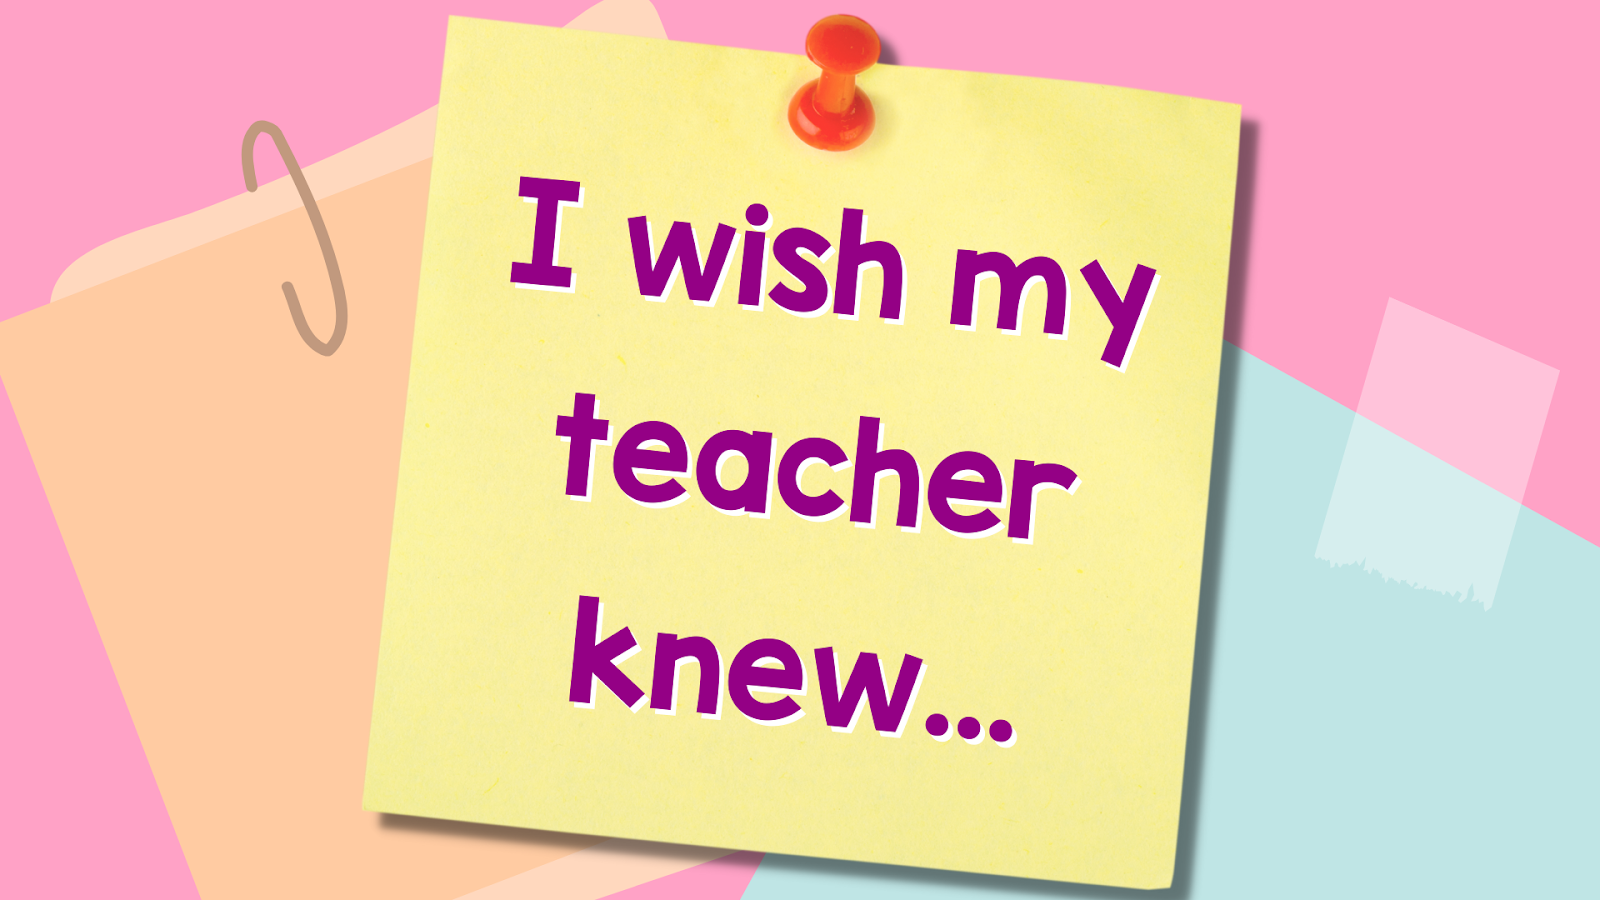 I wish my teacher knew...